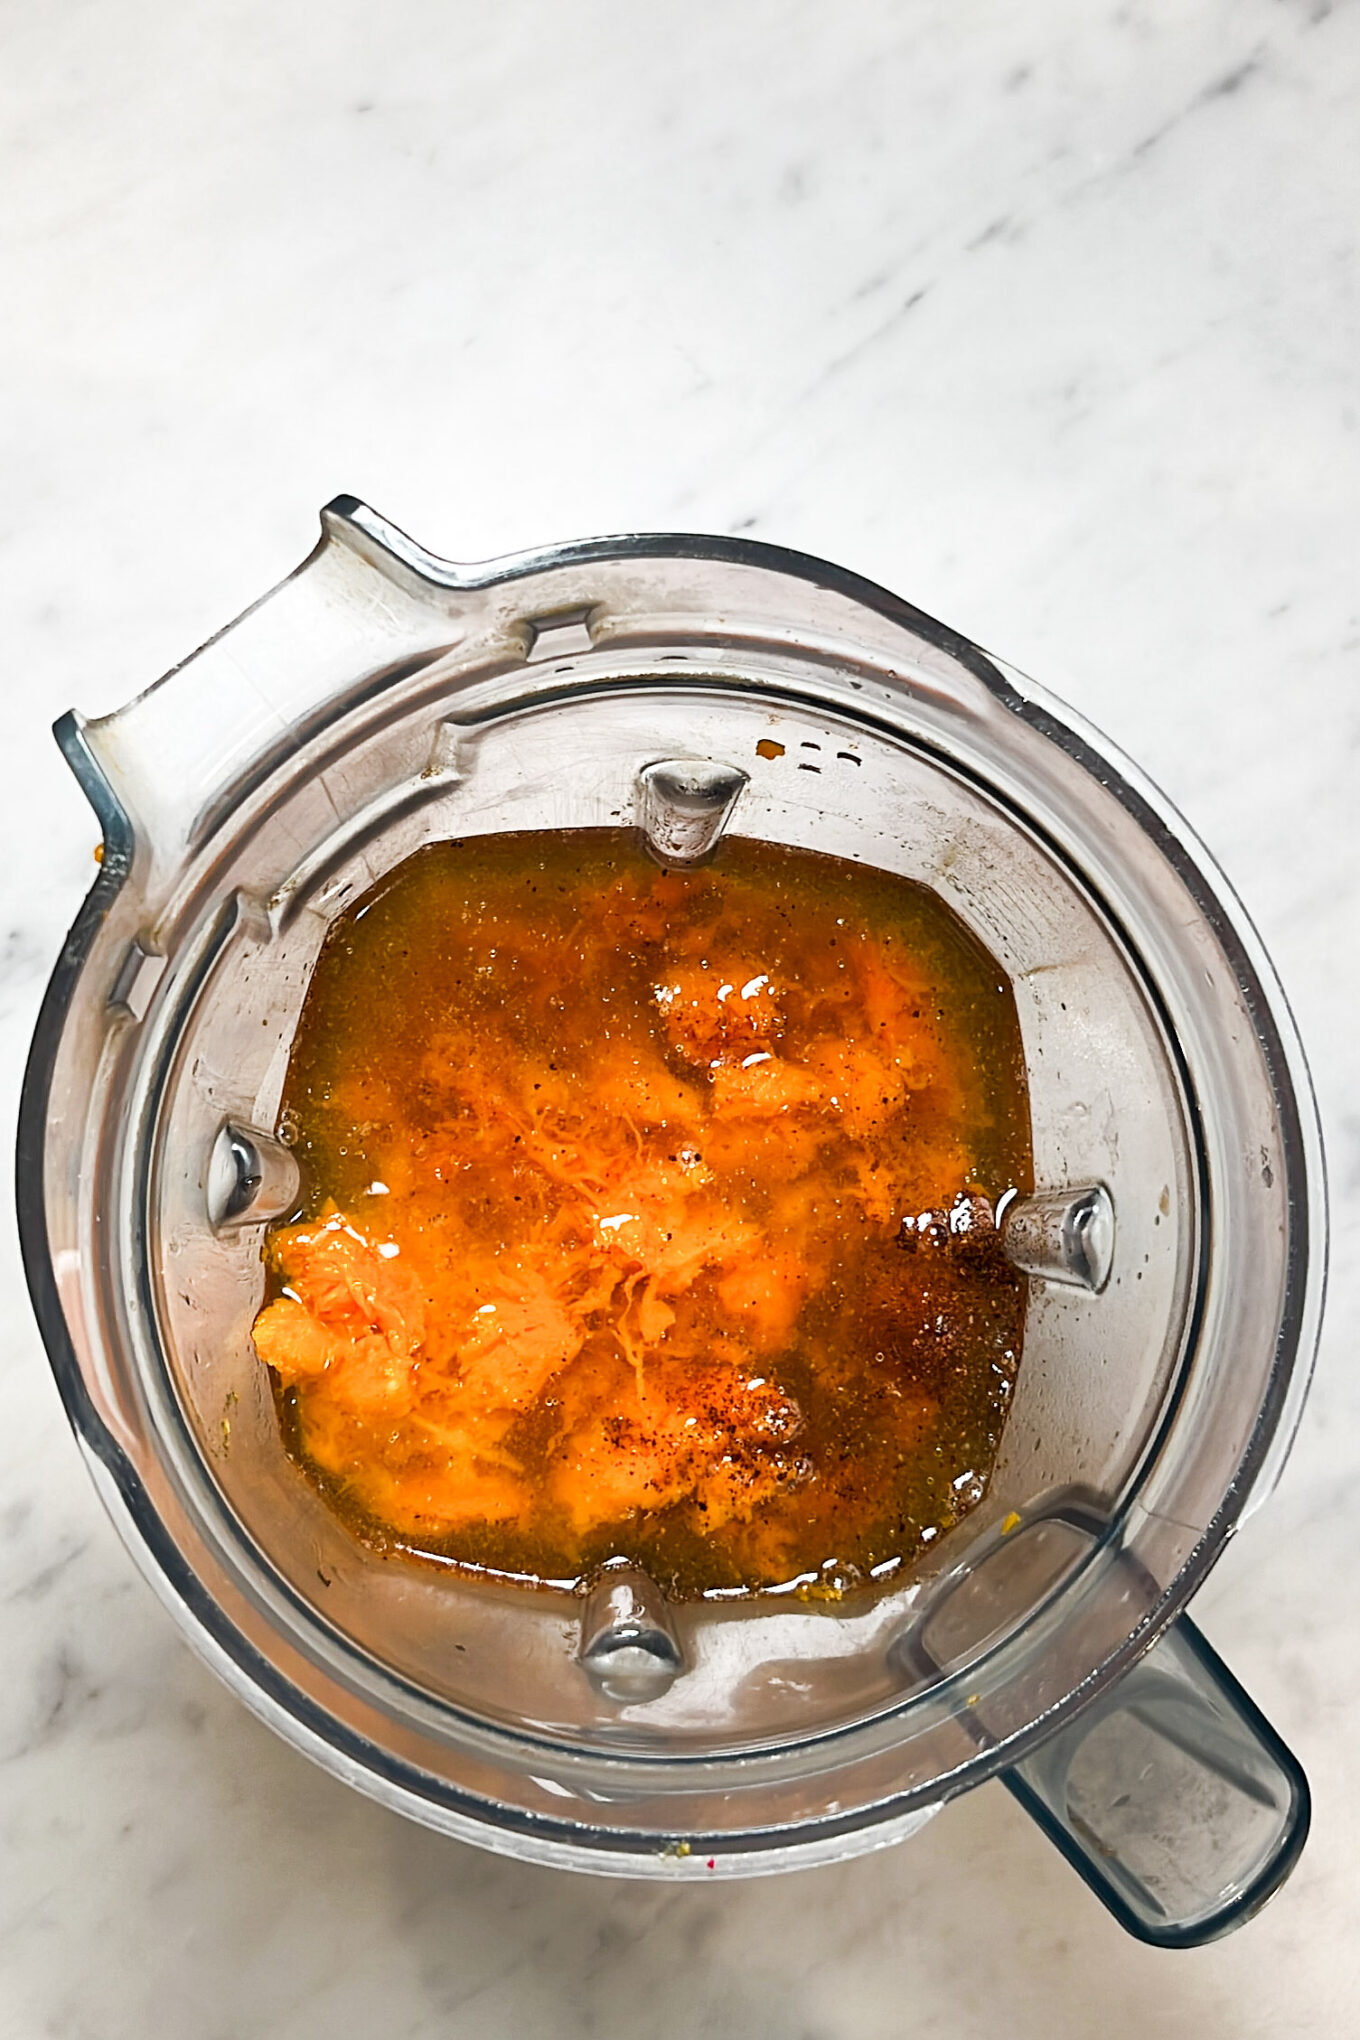 Una receta de sopa de calabaza fácil de preparar servida en un bol de cristal lleno de delicias líquidas y saludables.